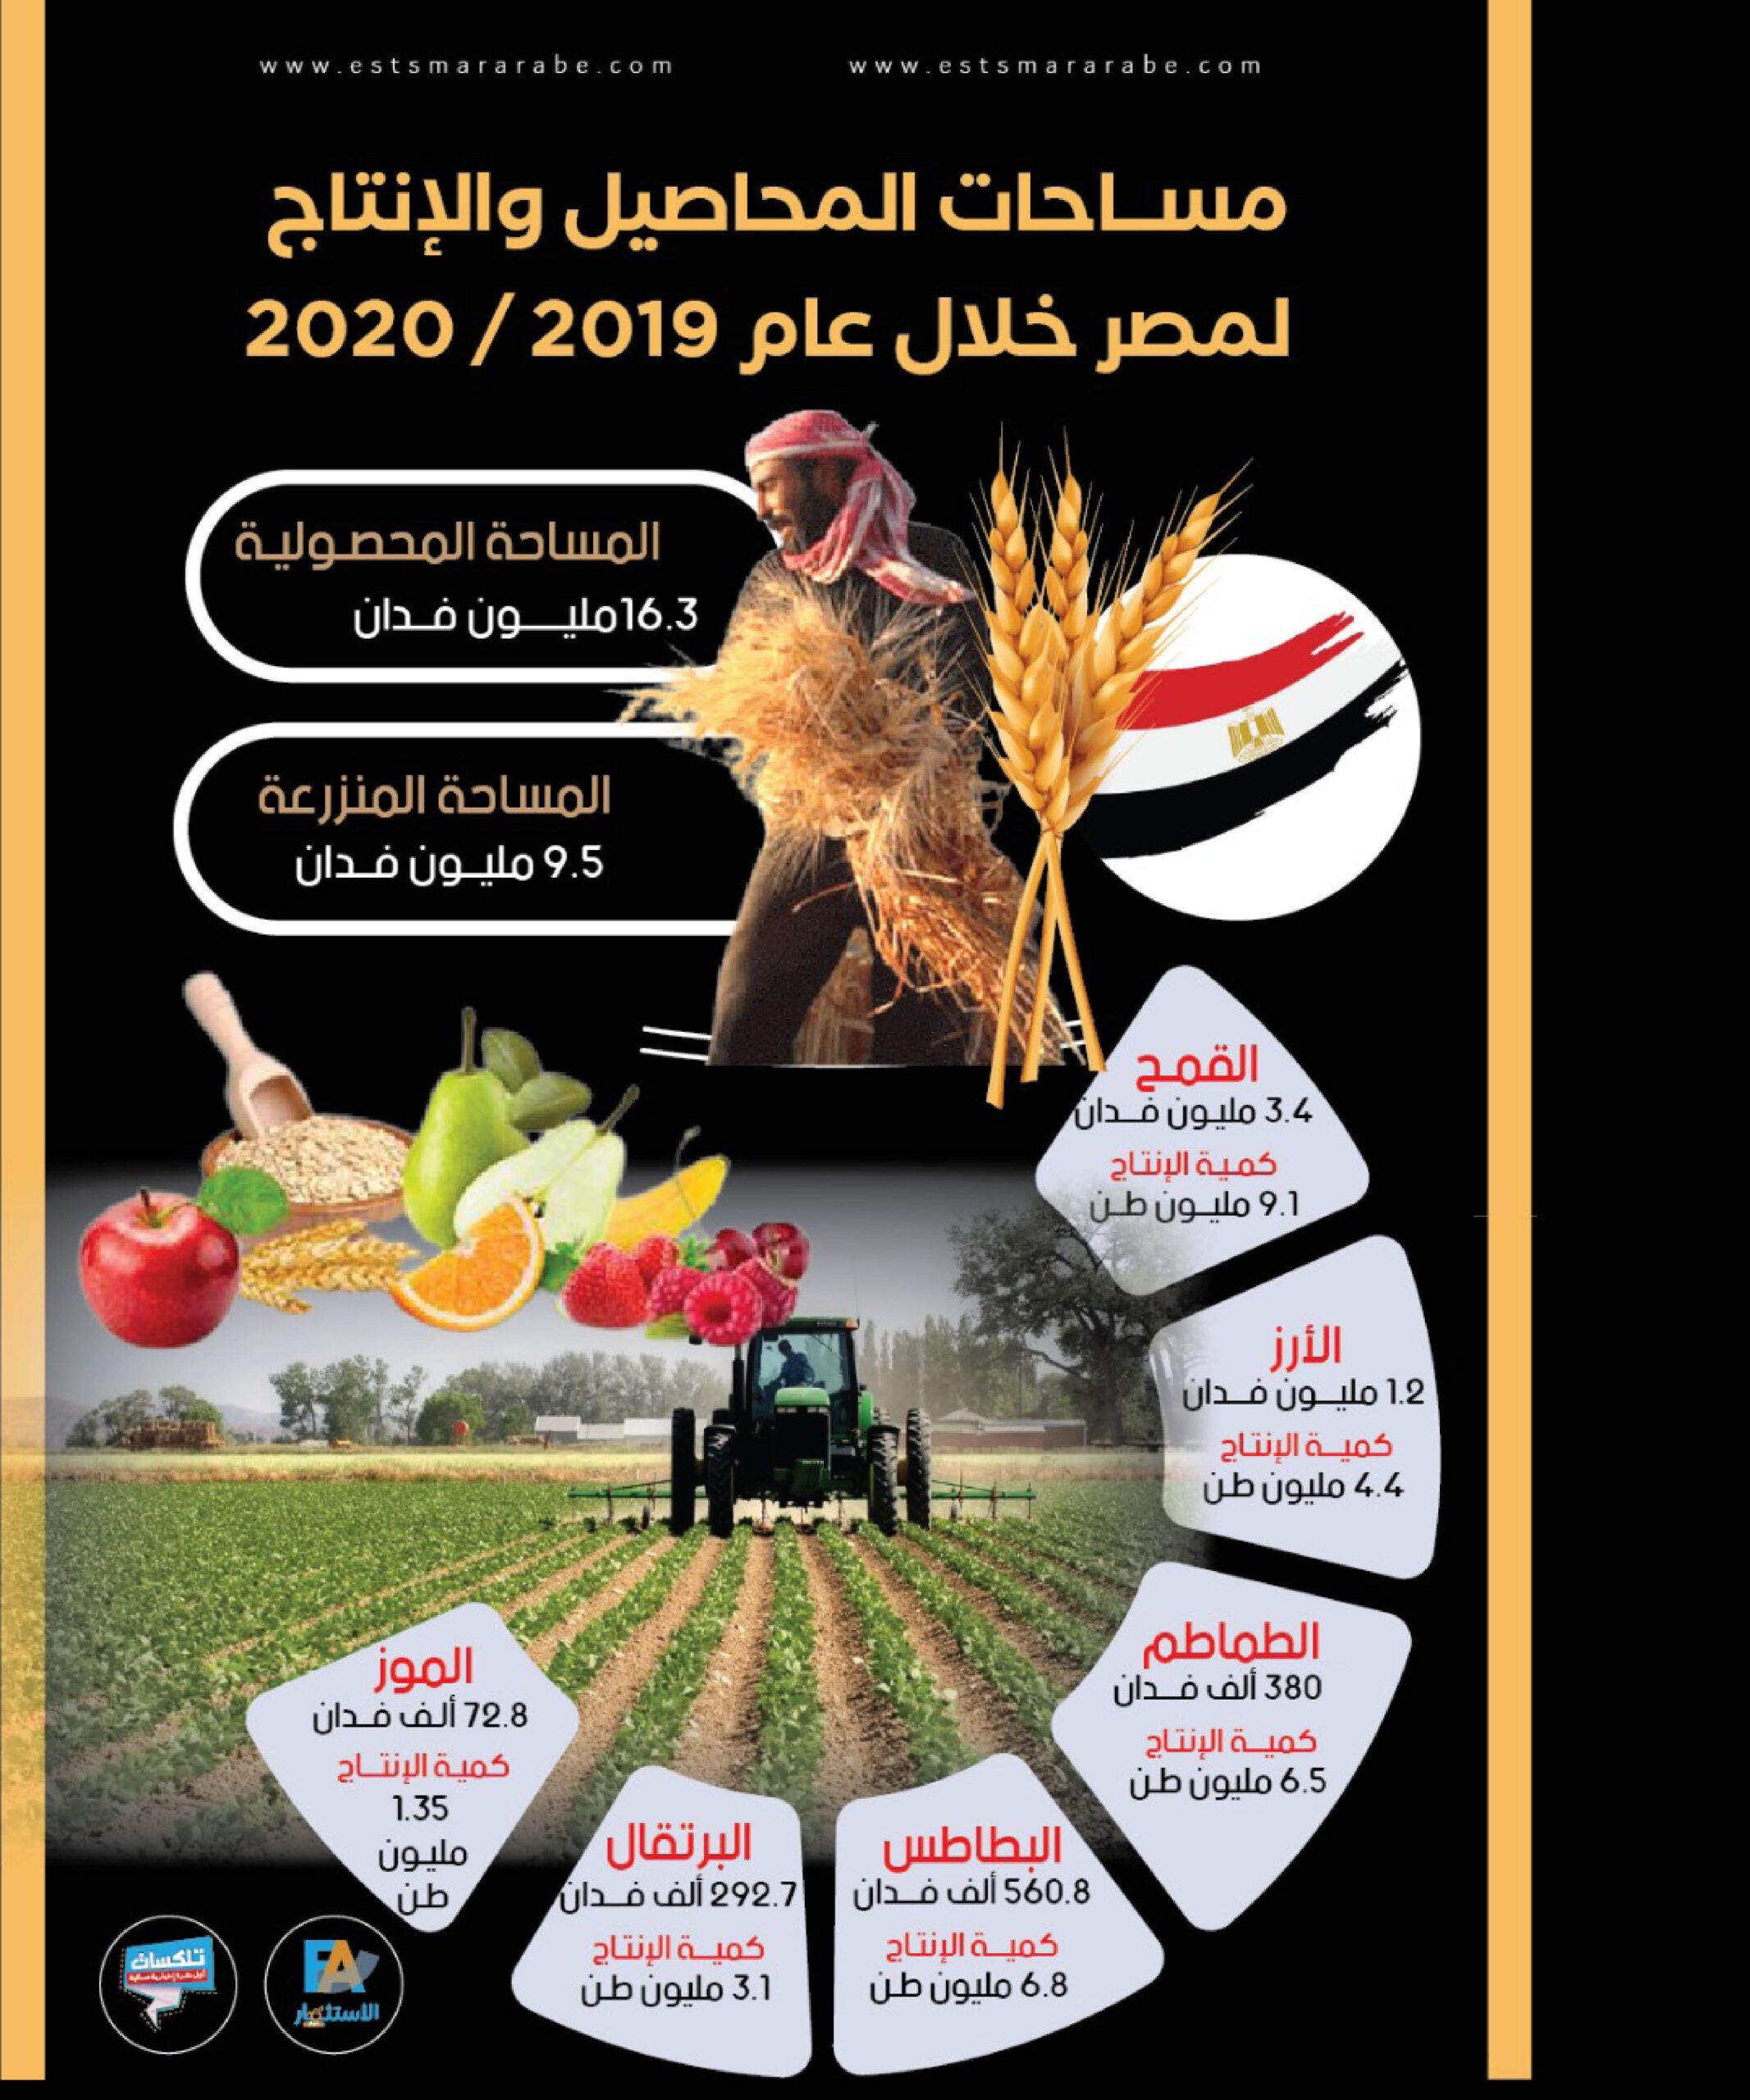 إنفوجرافيك || مساحات المحاصيل والإنتاج لمصر خلال 2020/2019